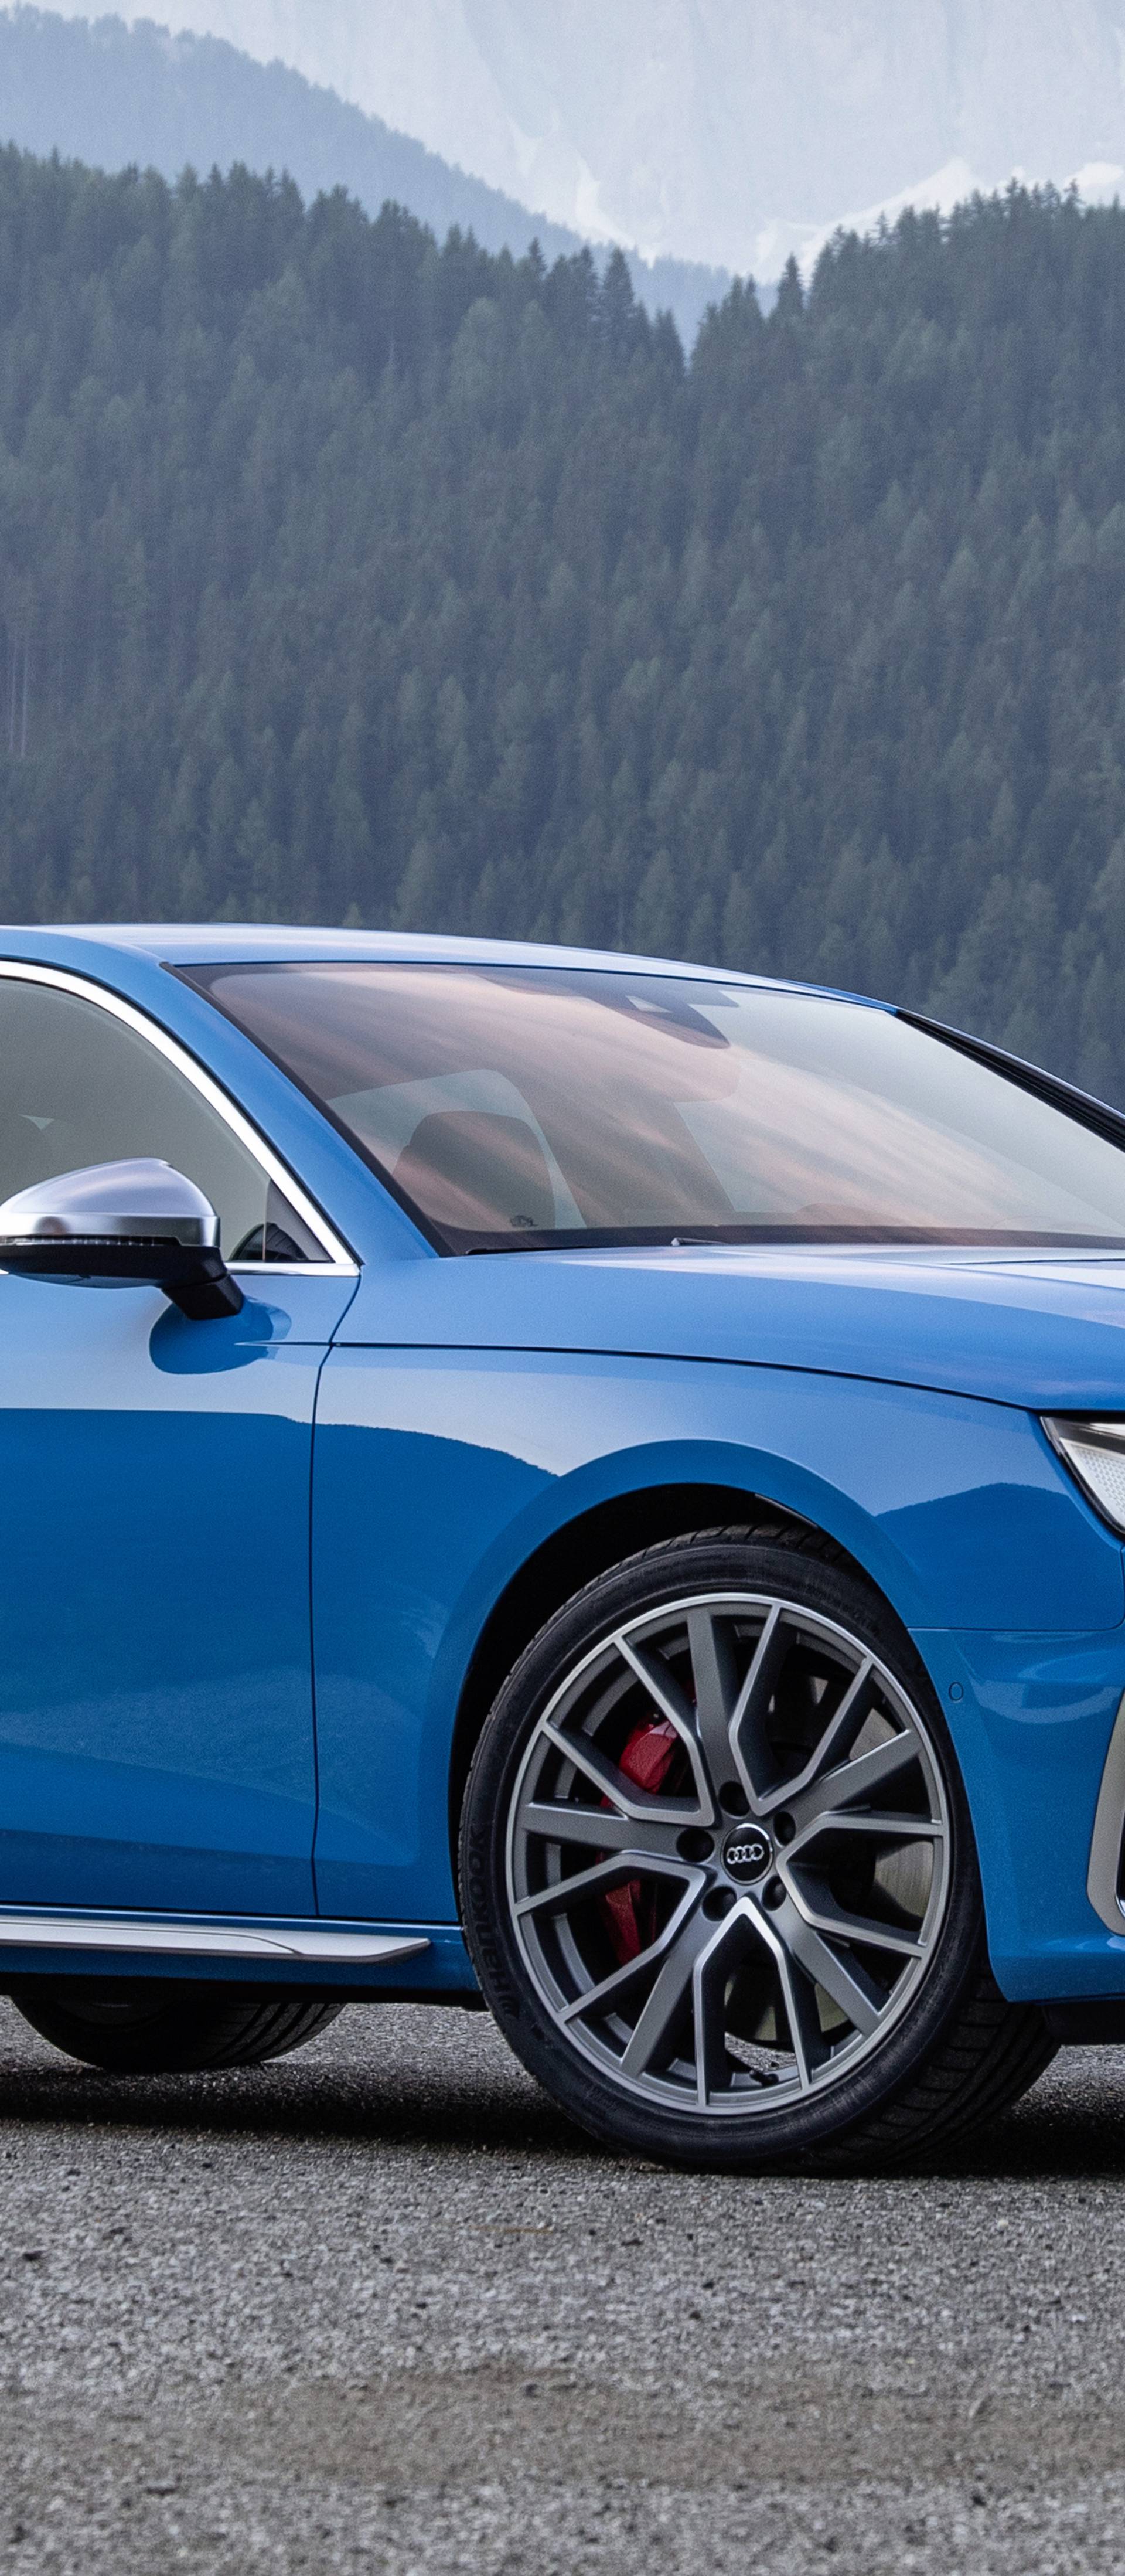 Audi je obnovio A4, ali pravi san je dizelski S4 s 347 'konja'